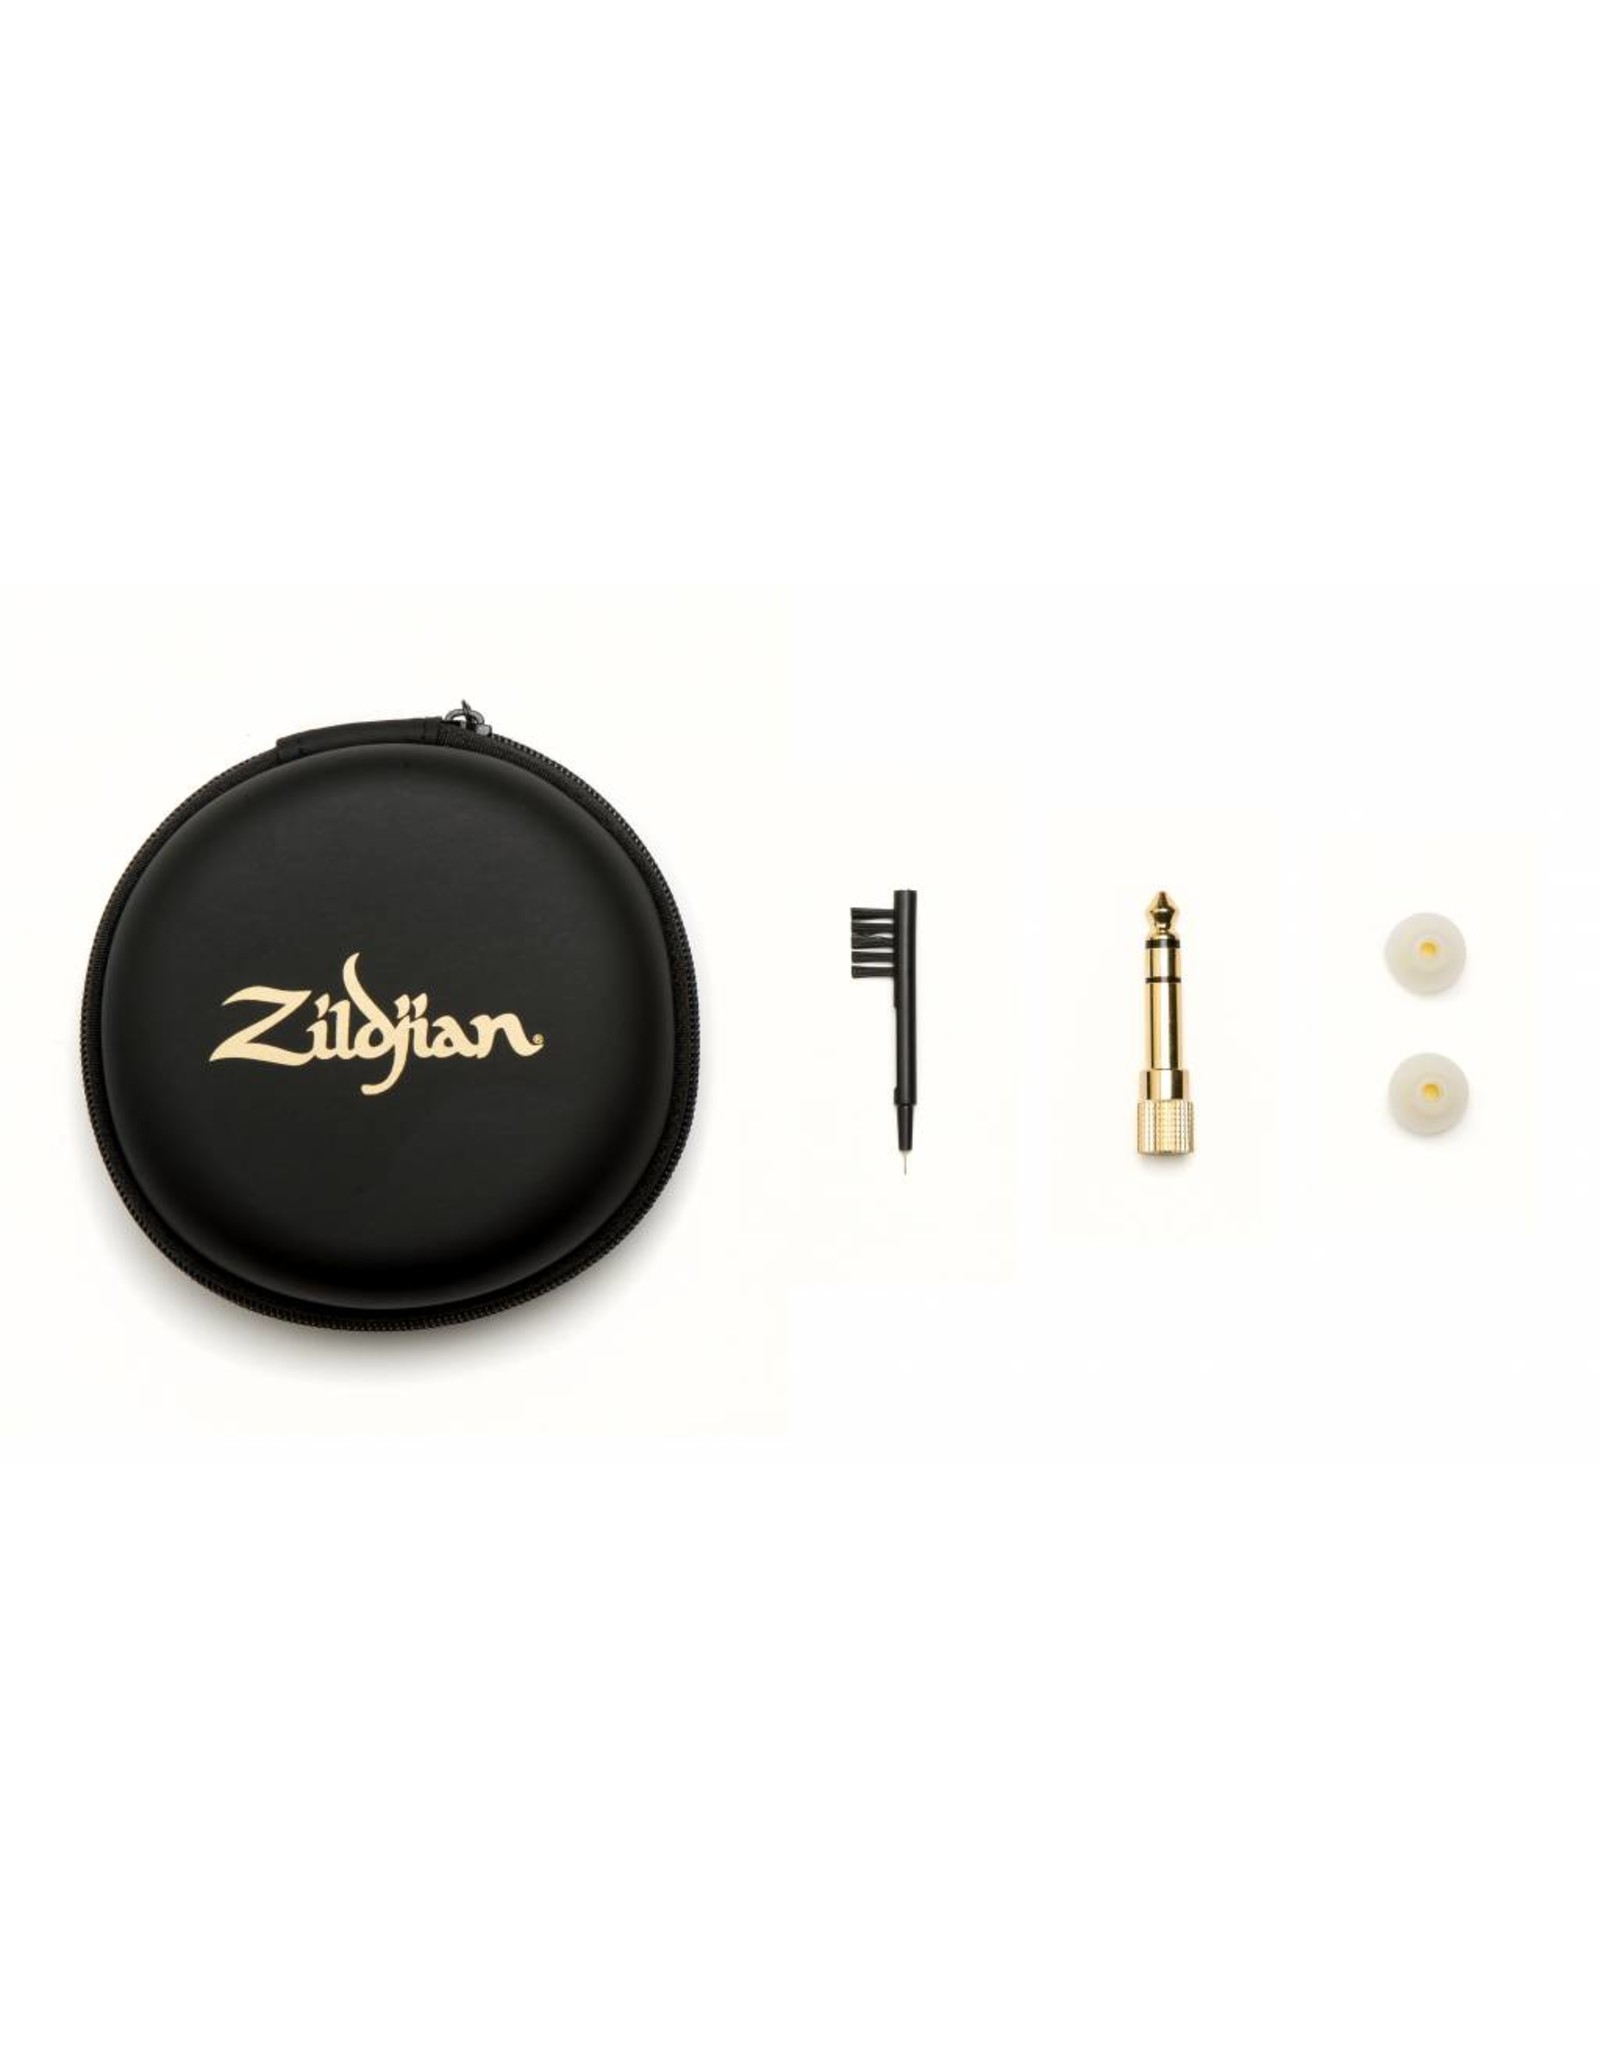 Zildjian ZIEM1 Professional inear monitors